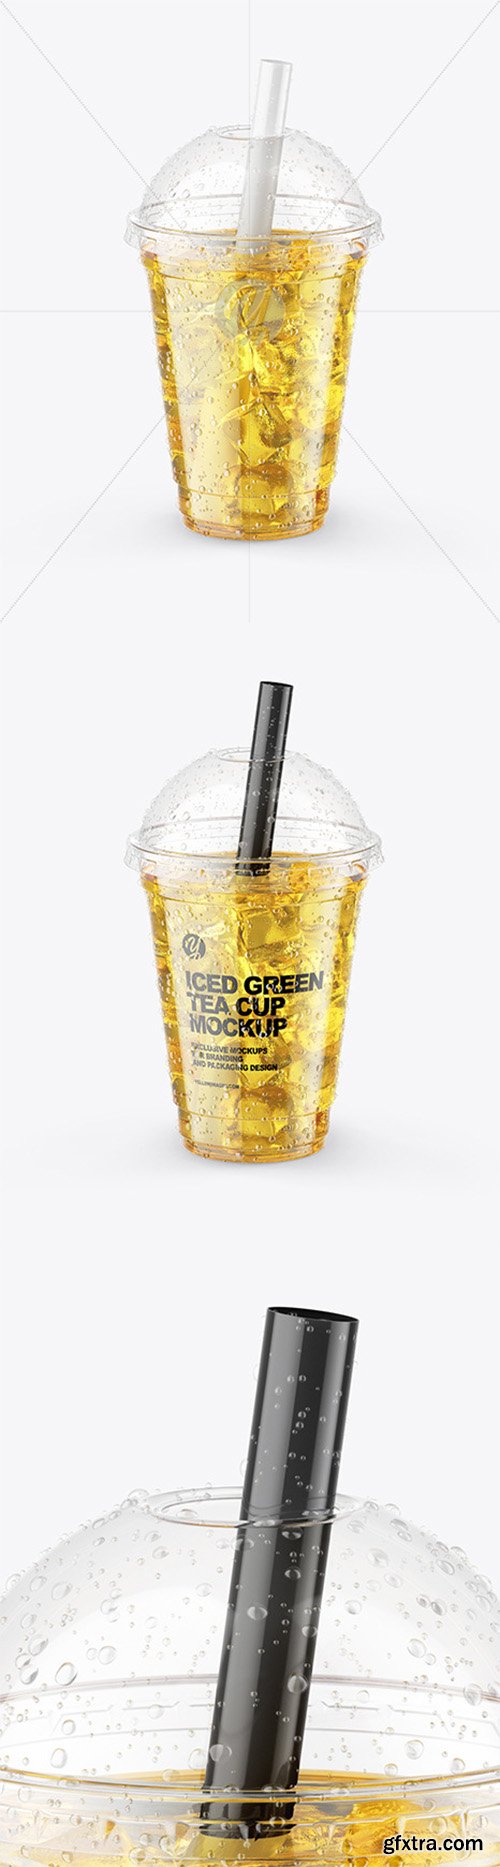 Iced Green Tea Cup Mockup 64942